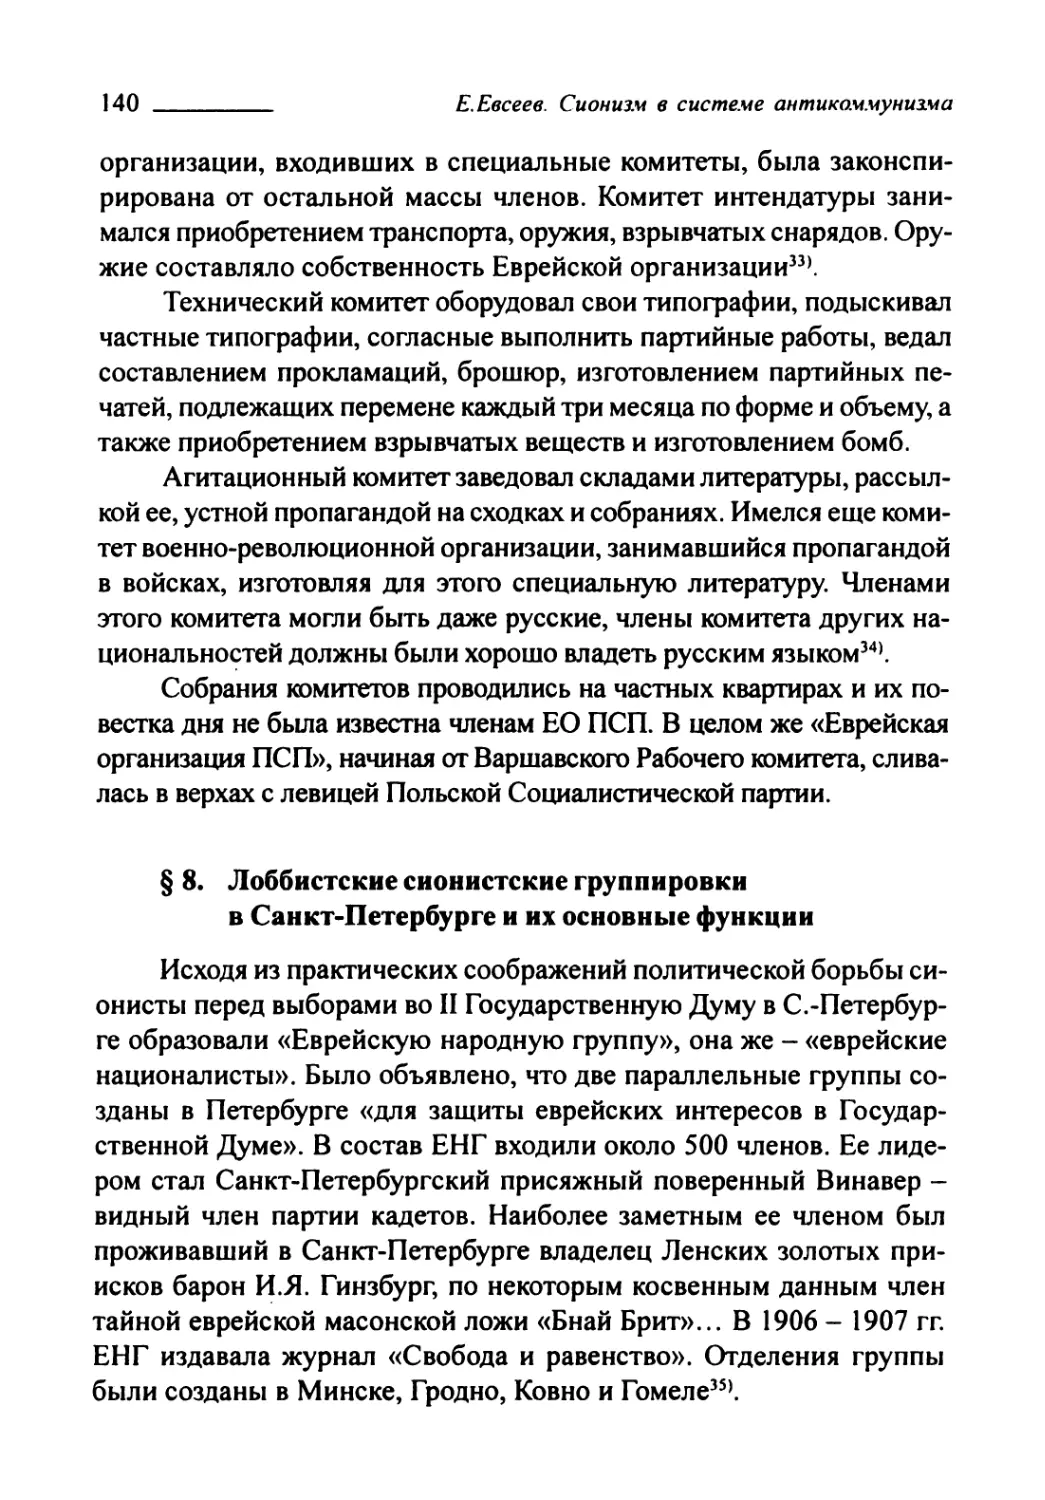 § 8. Лоббистские сионистские группировки в Санкт-Петербурге и их основные функции